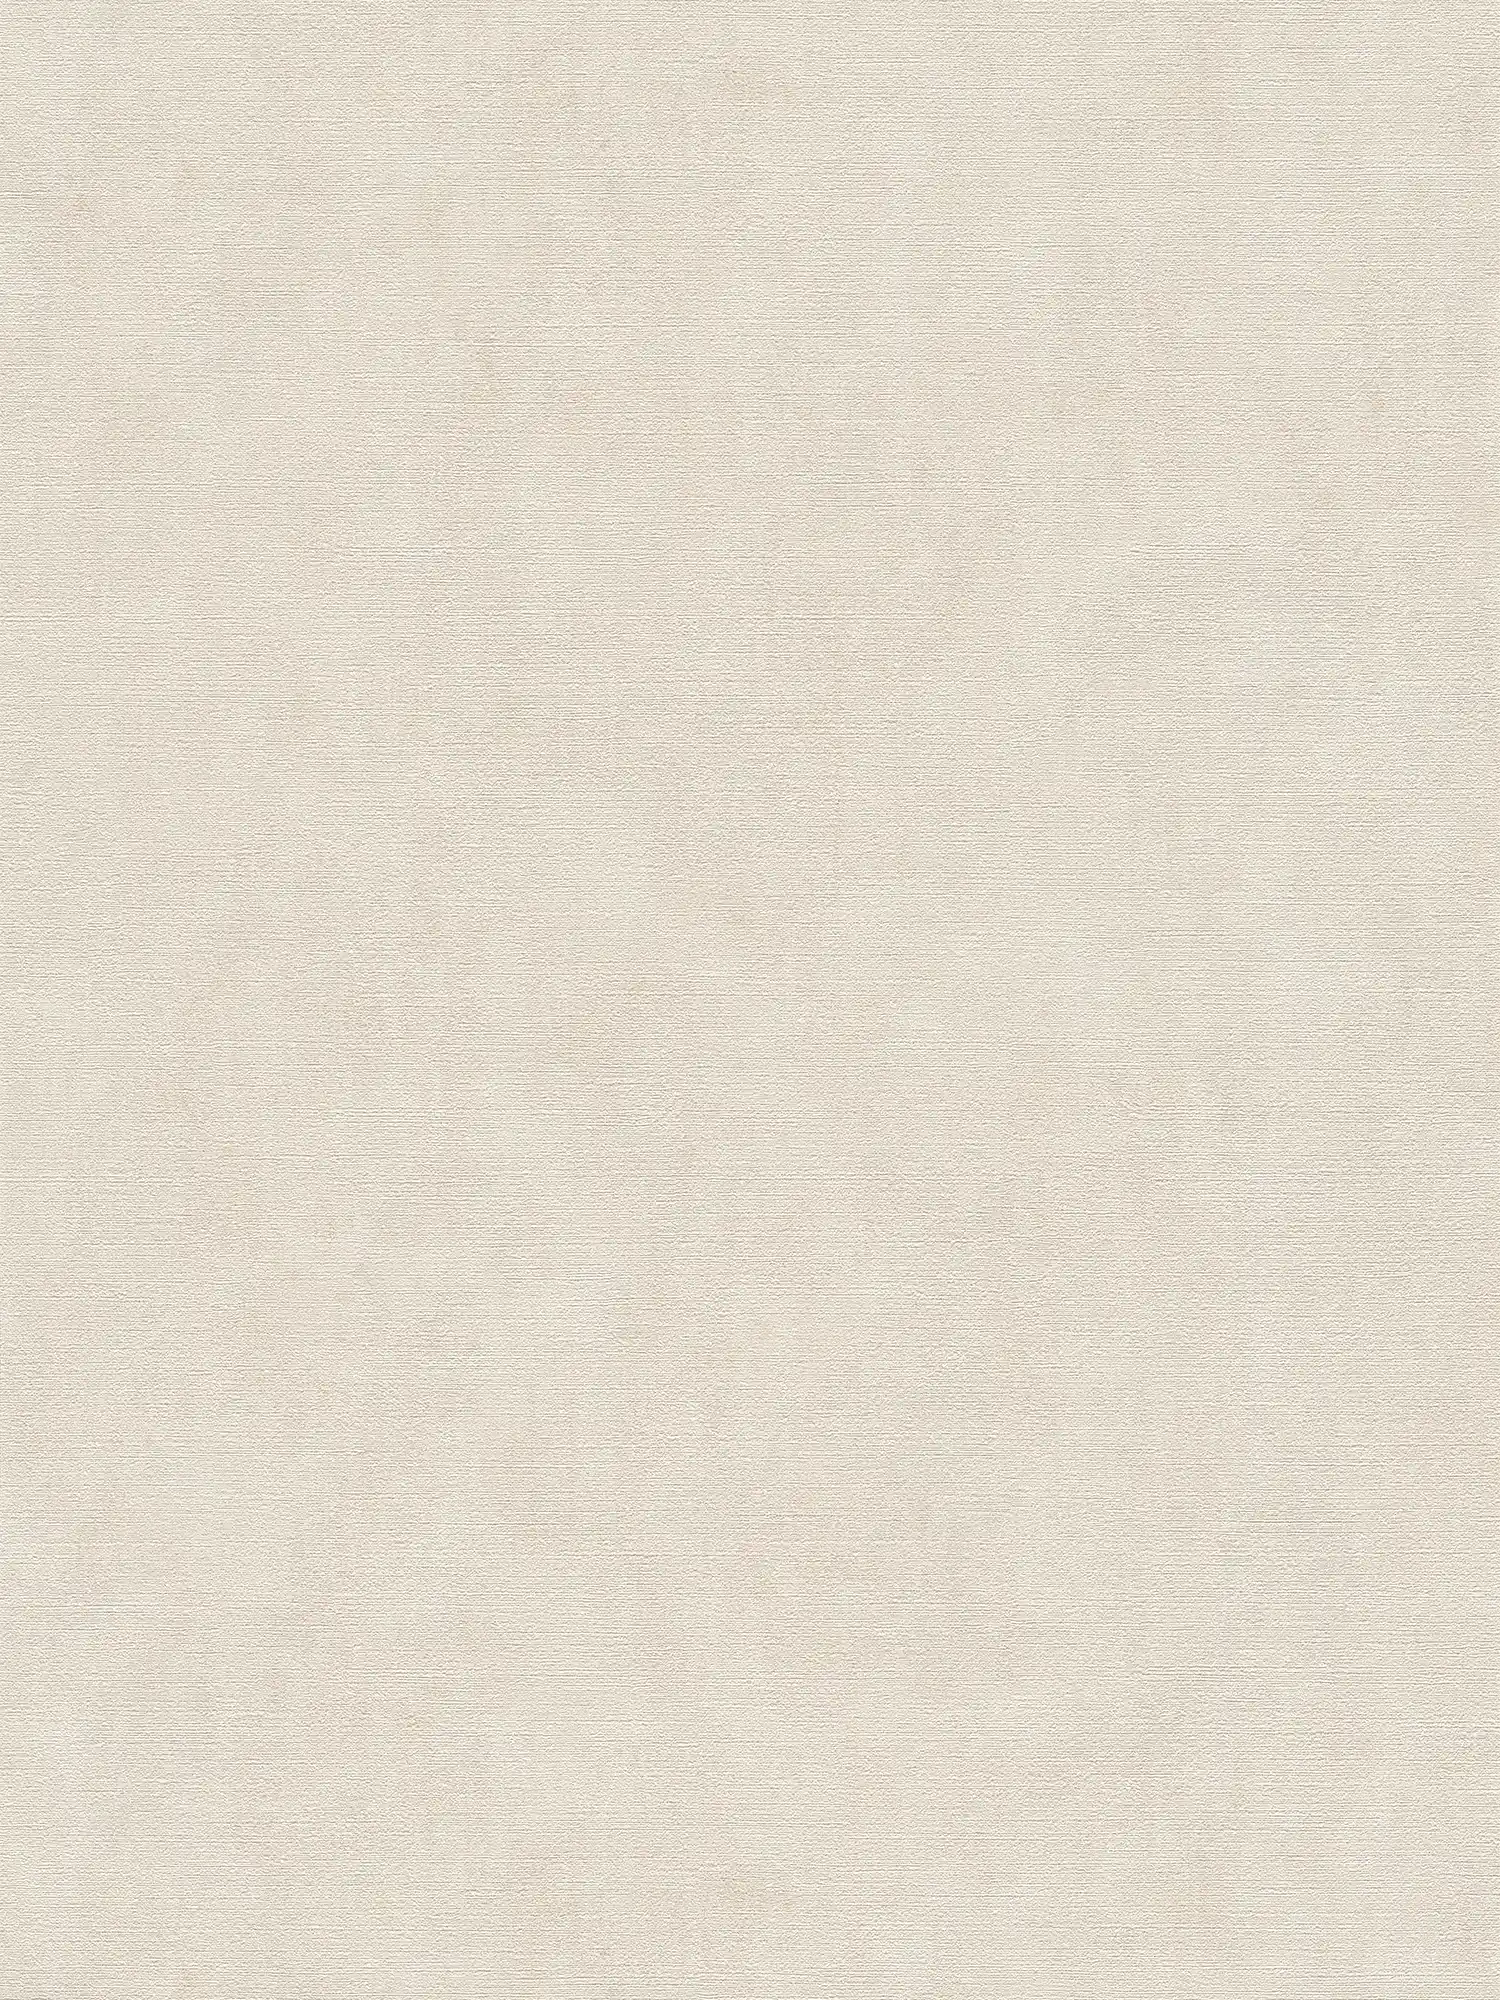 Wallpaper beige plain with embossed pattern & vintage look
